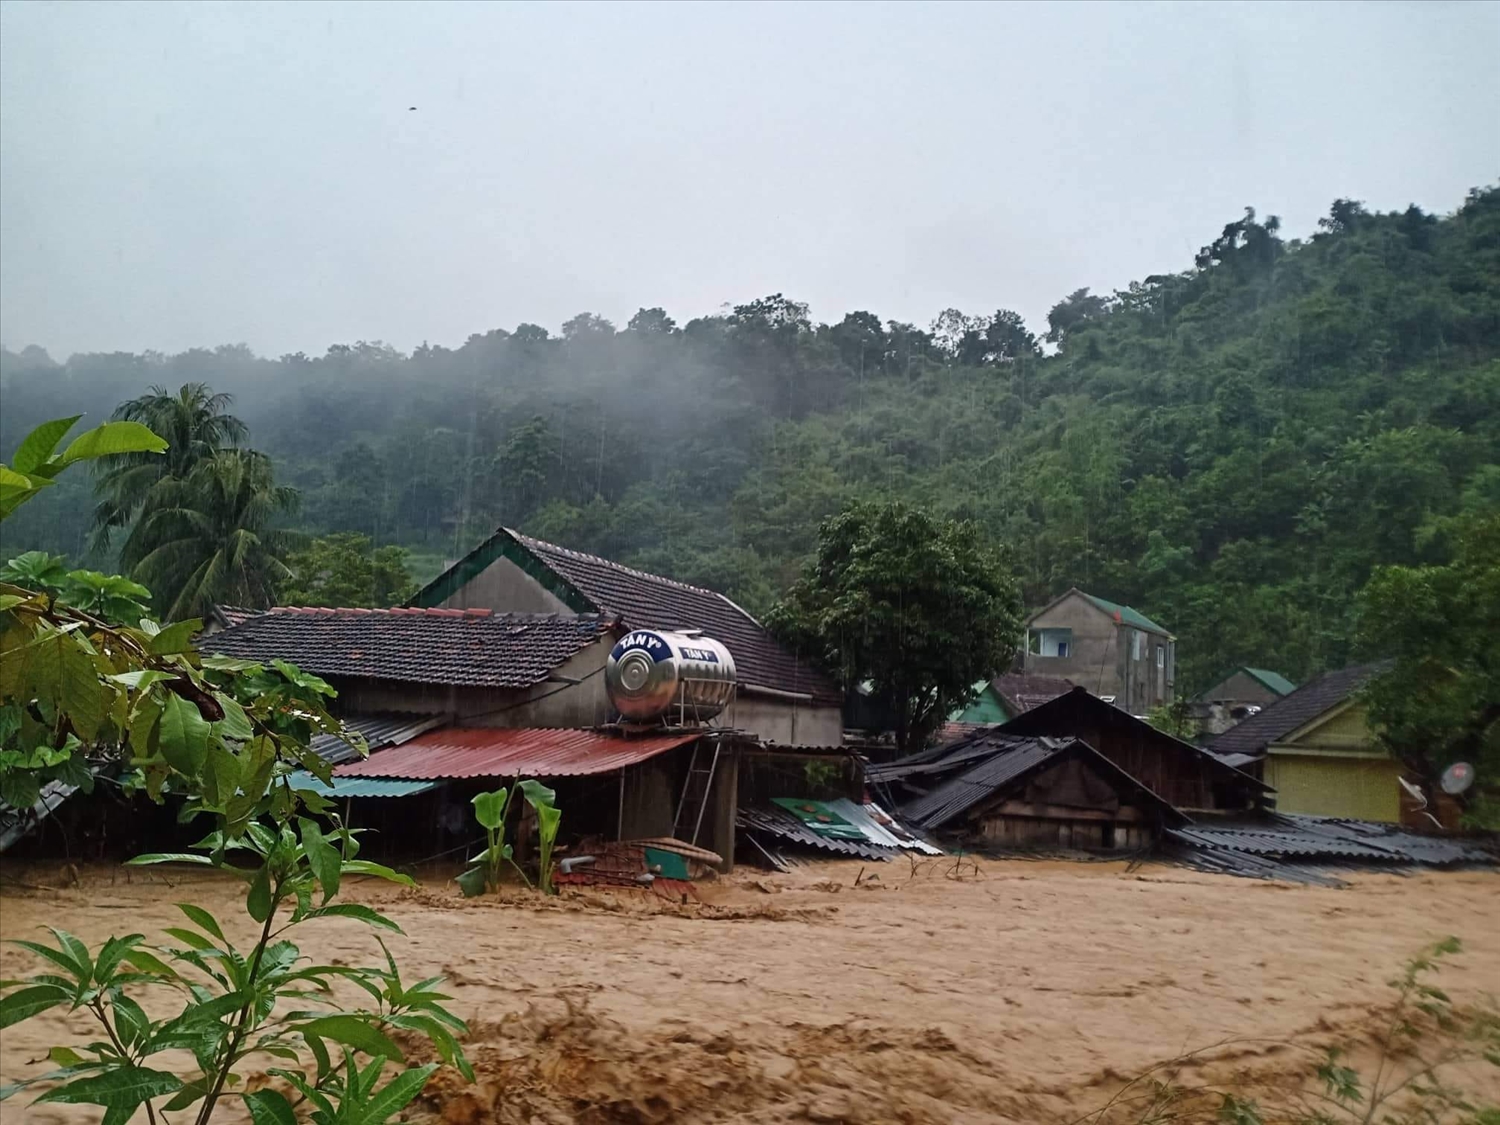 Lũ quét xảy ra tại địa bàn xã Tà Cạ, huyện Kỳ Sơn (Nghệ An) sáng ngày 2/10